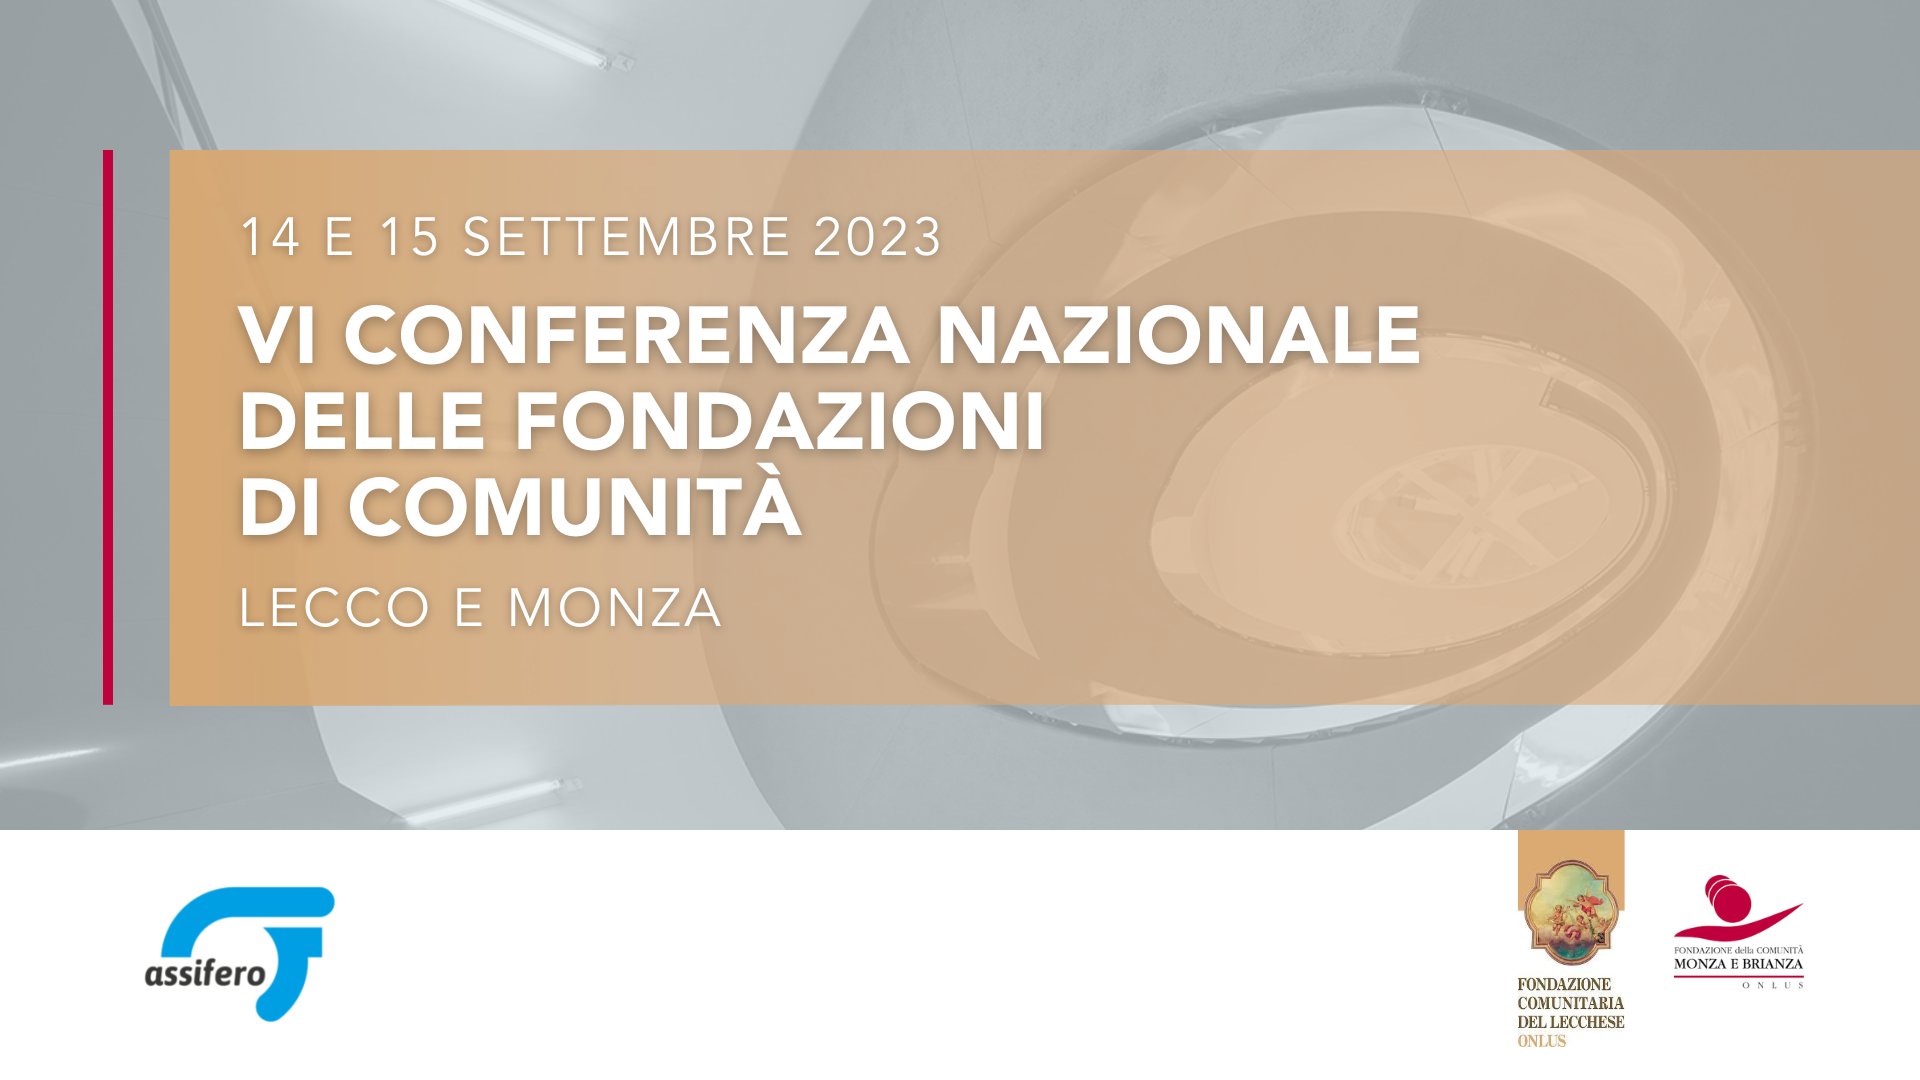 Featured image for “La nostra Fondazione alla VI Conferenza nazionale delle Fondazioni di Comunità”